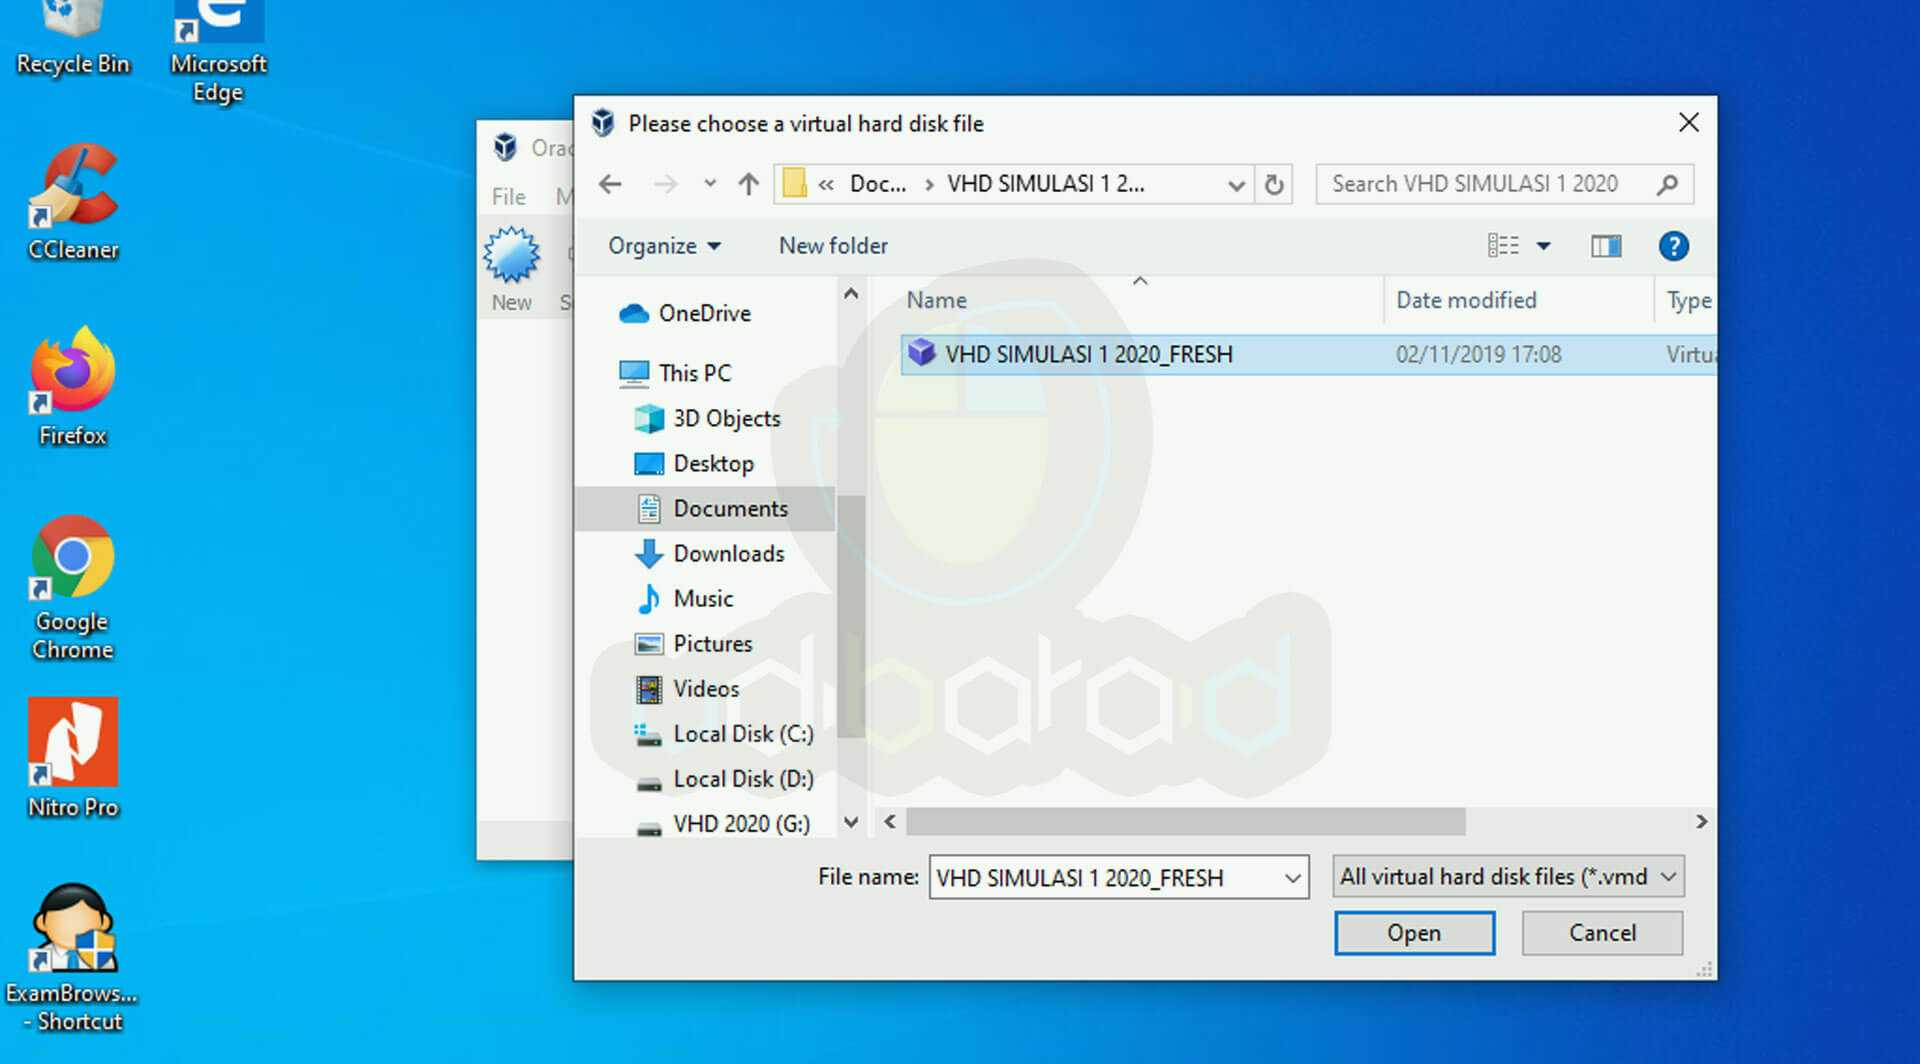 Загрузка с виртуального жесткого диска: добавление vhdx-файла или виртуального жесткого диска в меню загрузки | microsoft docs